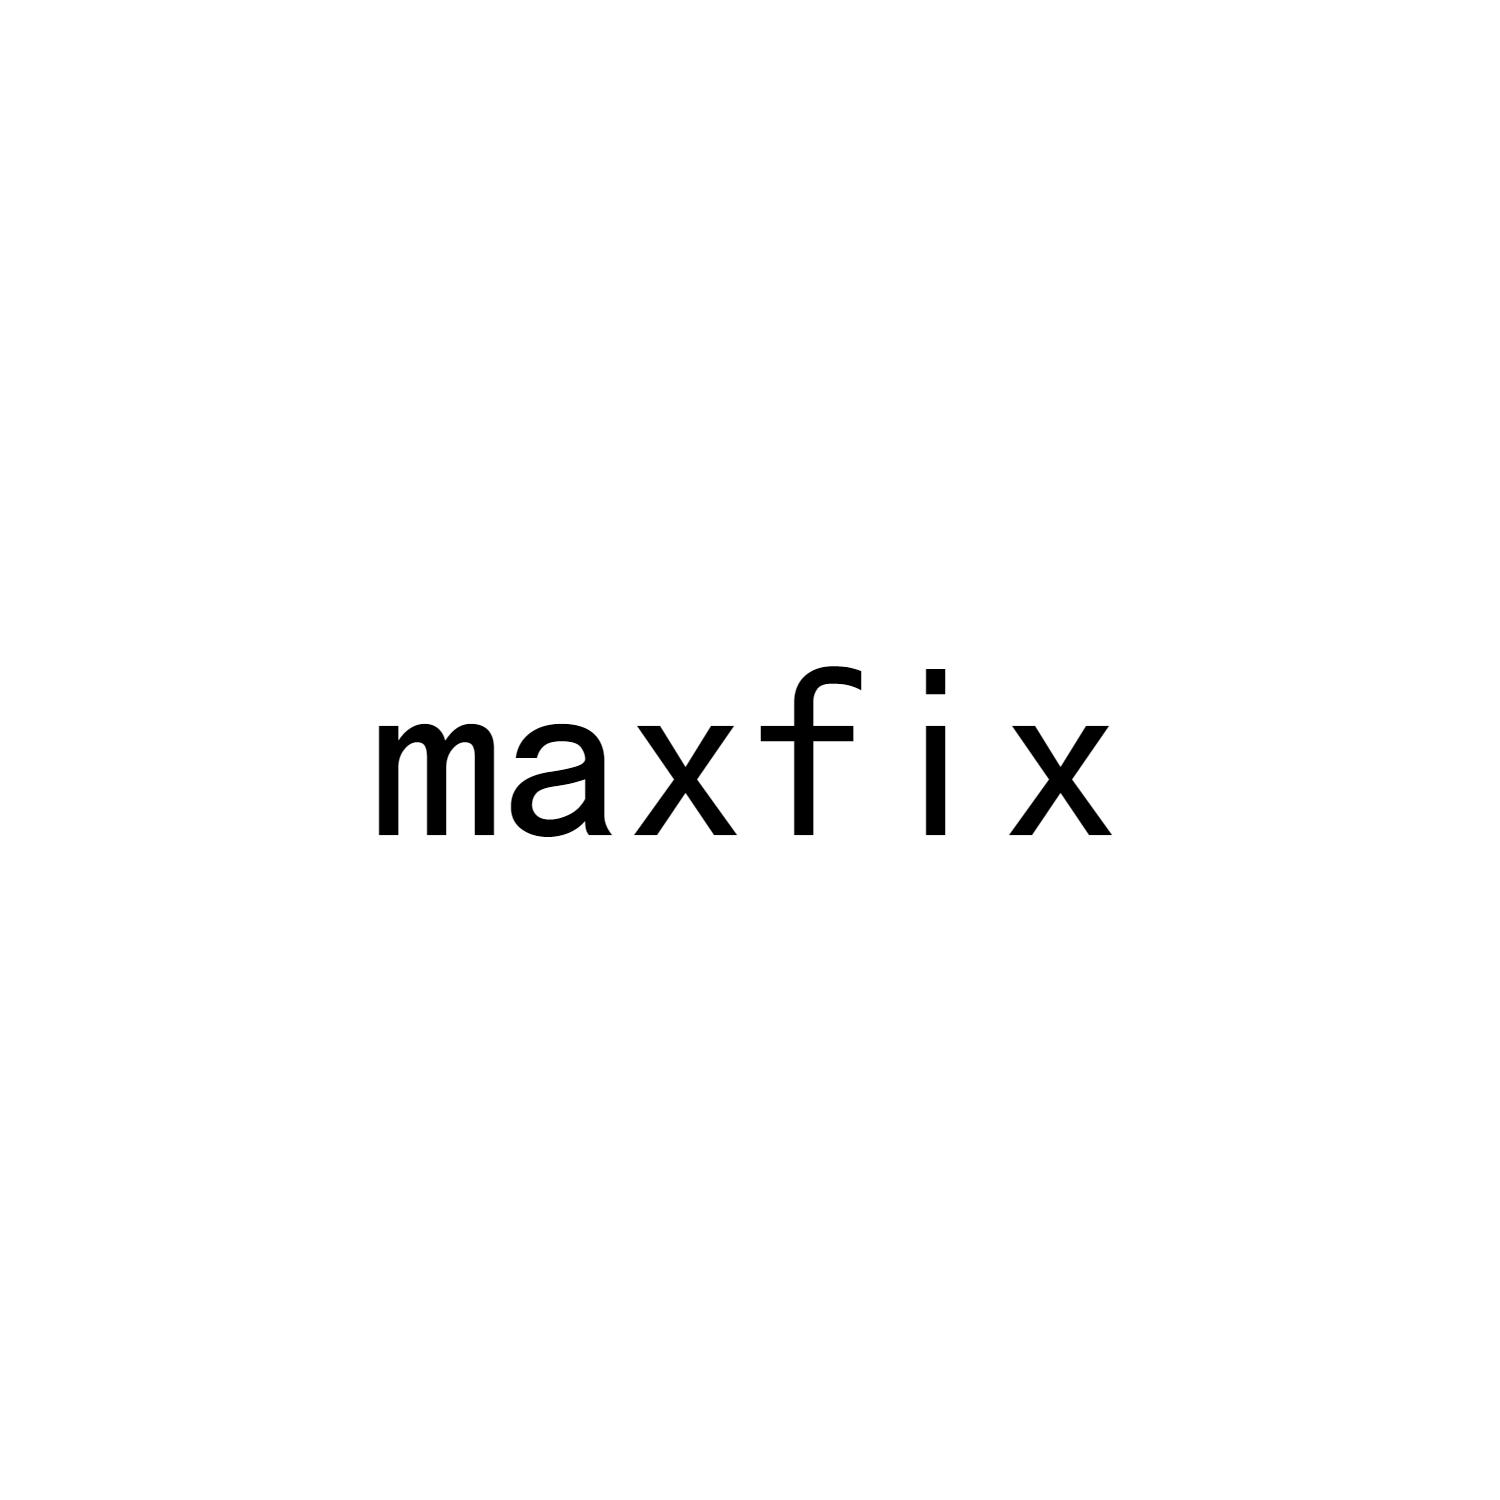 maxfix